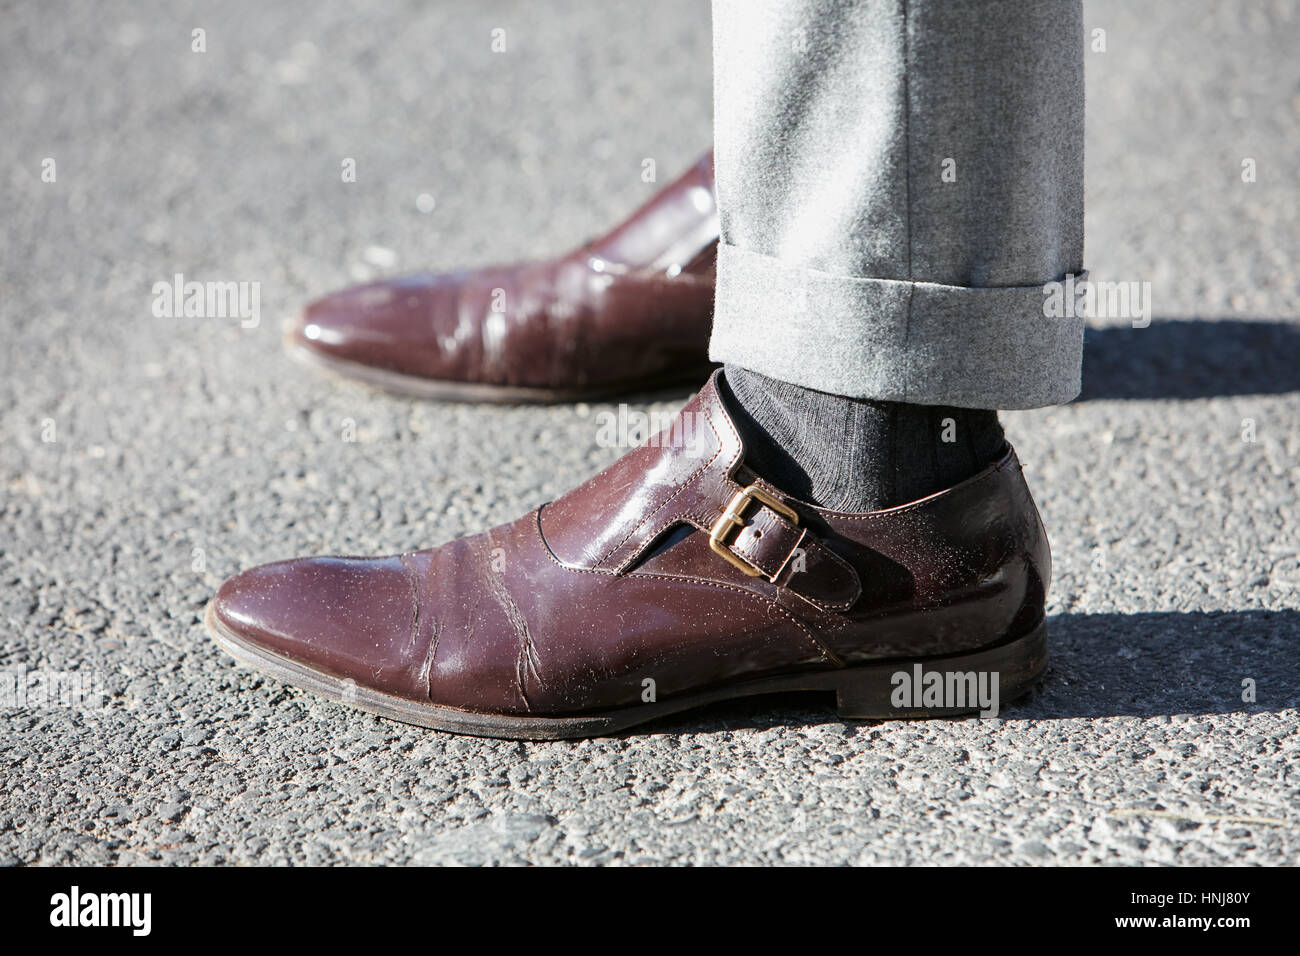 giorgio armani leather shoes